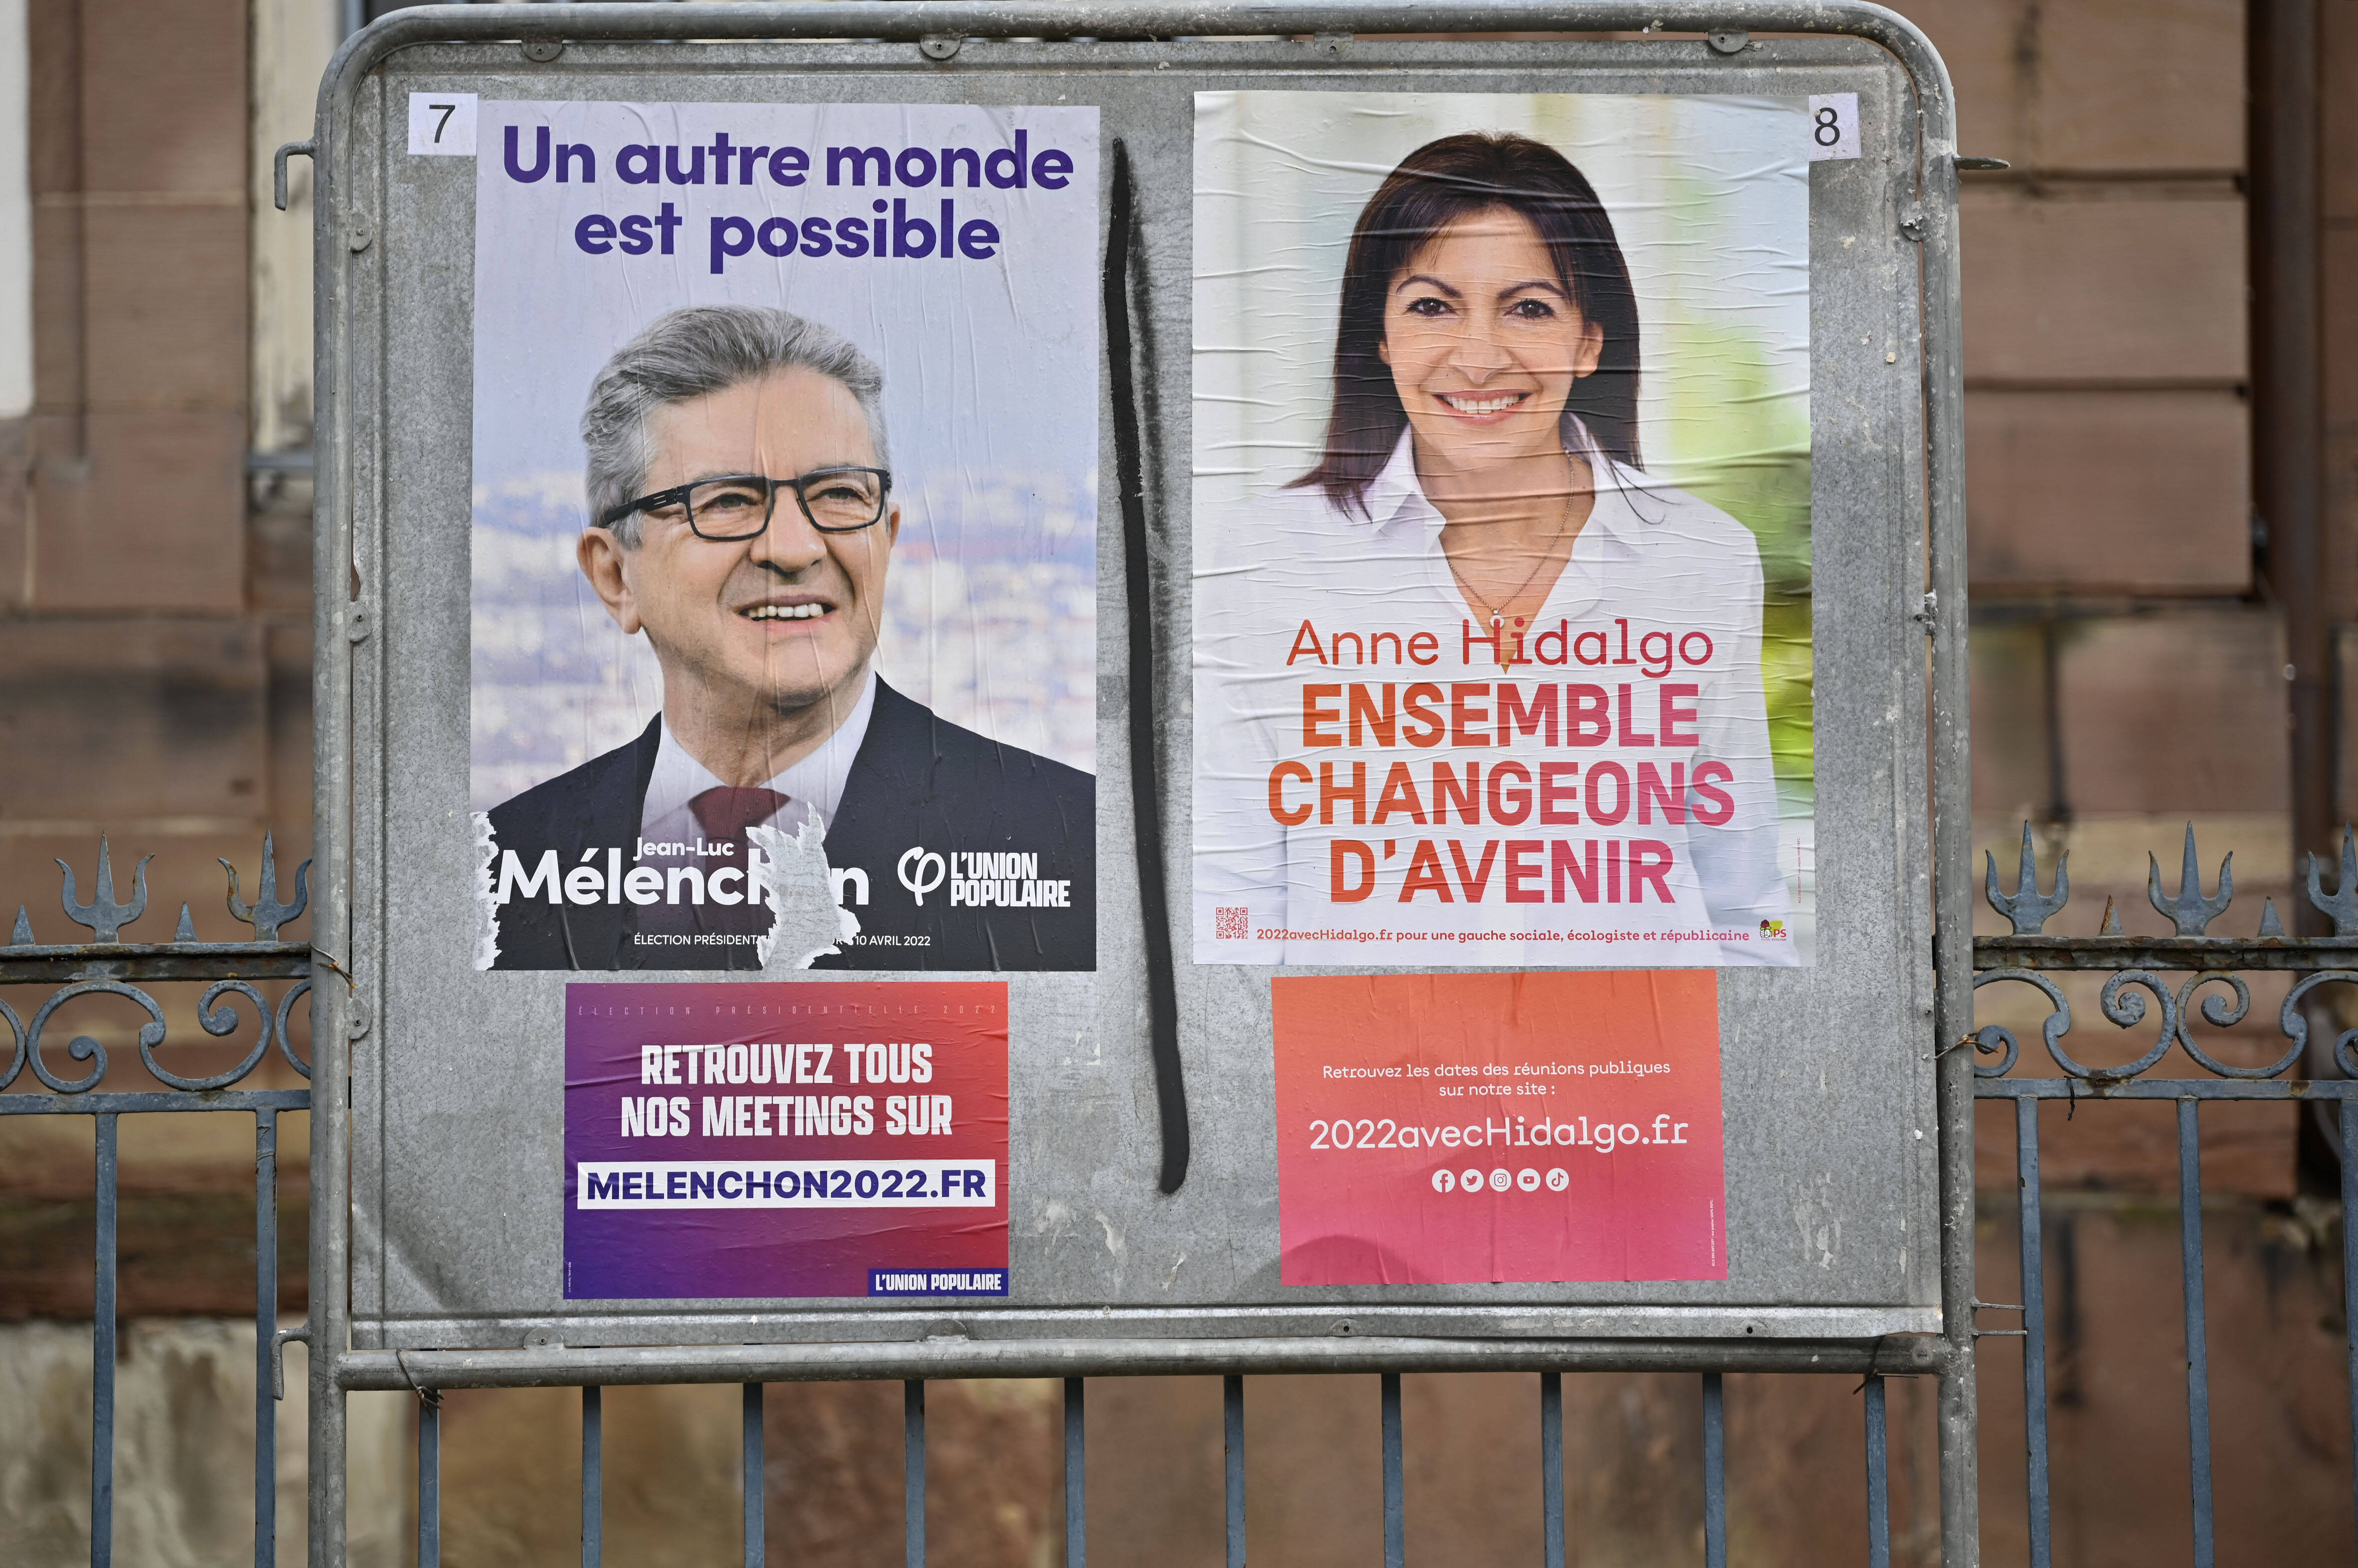 Hier waren sie noch Gegner, bei der Präsidentschaftswahl im April 2022: der Linkspopulist Jean-Luc Melenchon (l.) und die Sozialistin Anne Hidalgo. Bei den Parlamentswahlen im Juni 2022 arbeiten sie zusammen.